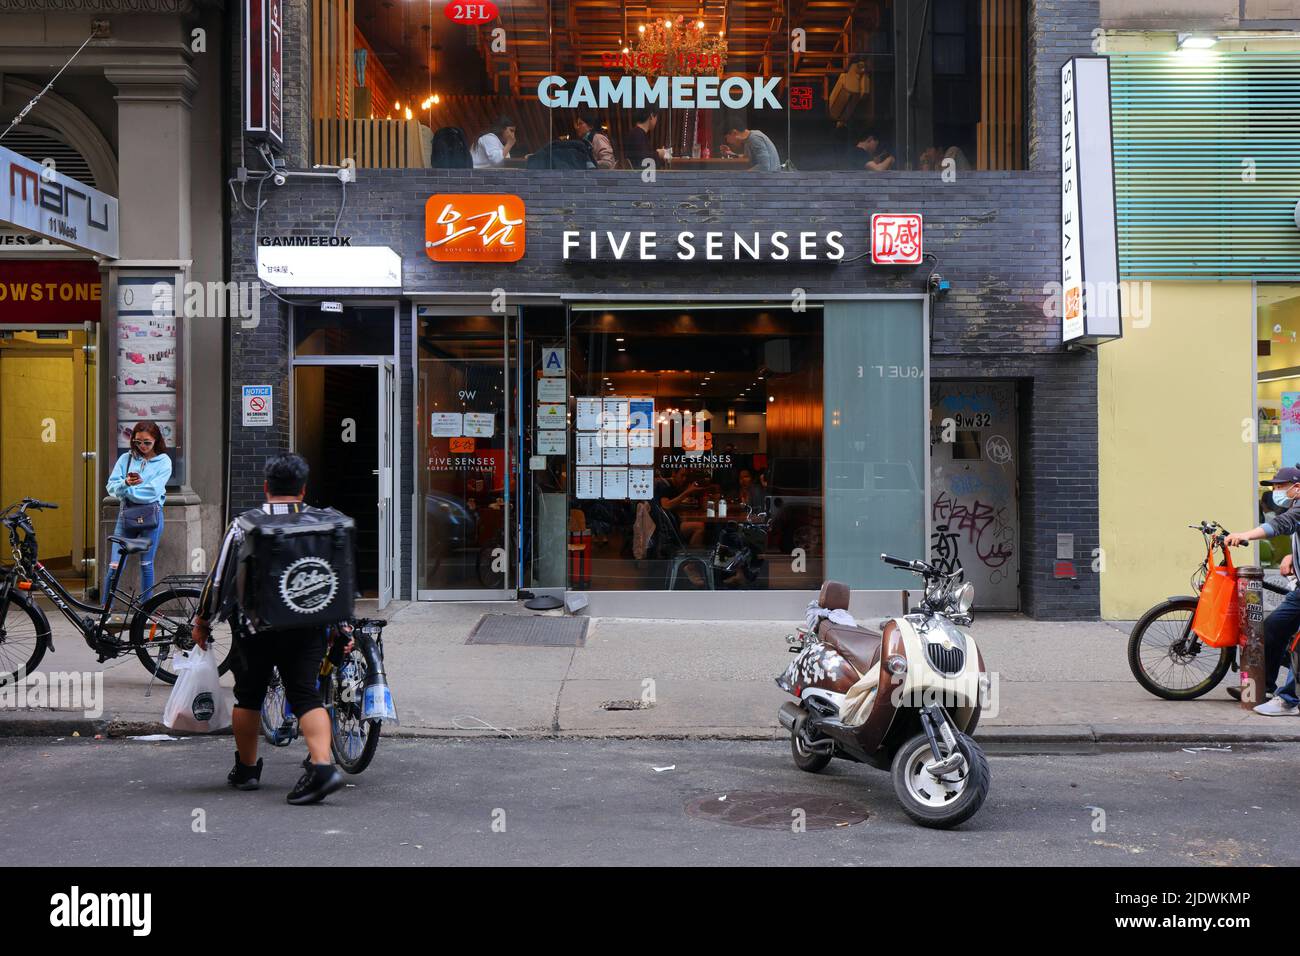 Five Senses 오감, Gammeeok 감미옥, 9 W 32. St, New York, NYC Foto von koreanischen Restaurants in Manhattan Koreatown. Stockfoto